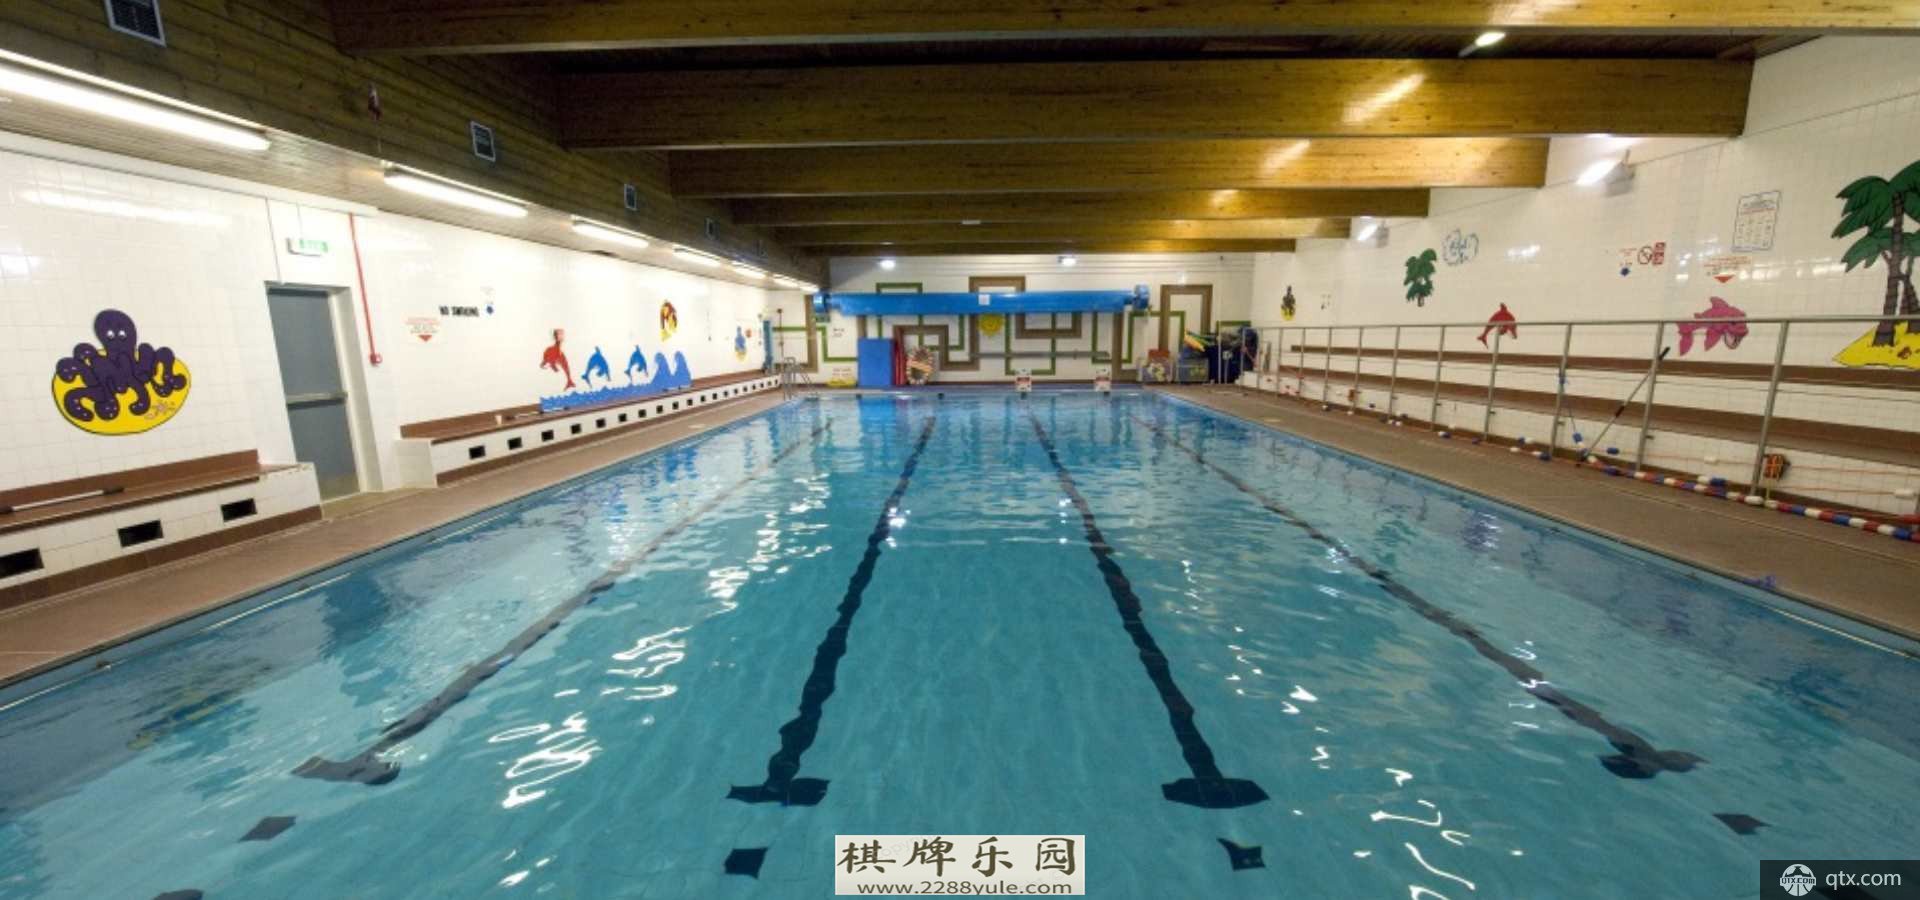 「游泳池」游泳池标准尺寸游泳池等级